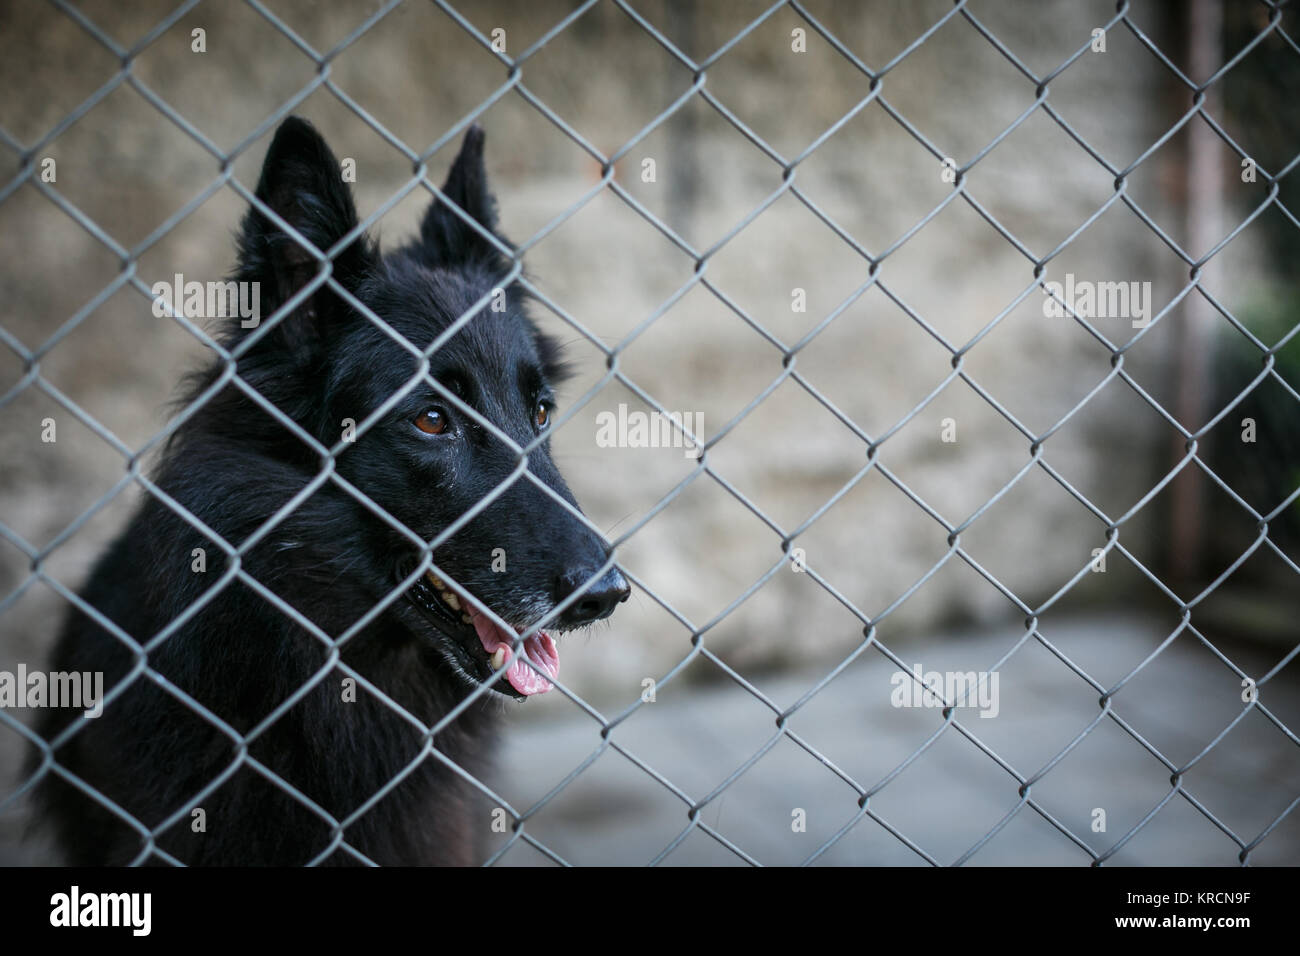 Unterschlupf für obdachlose Hunde - Hund hinter in einem Käfig wartet auf  einen neuen Besitzer, ihn anzunehmen Stockfotografie - Alamy